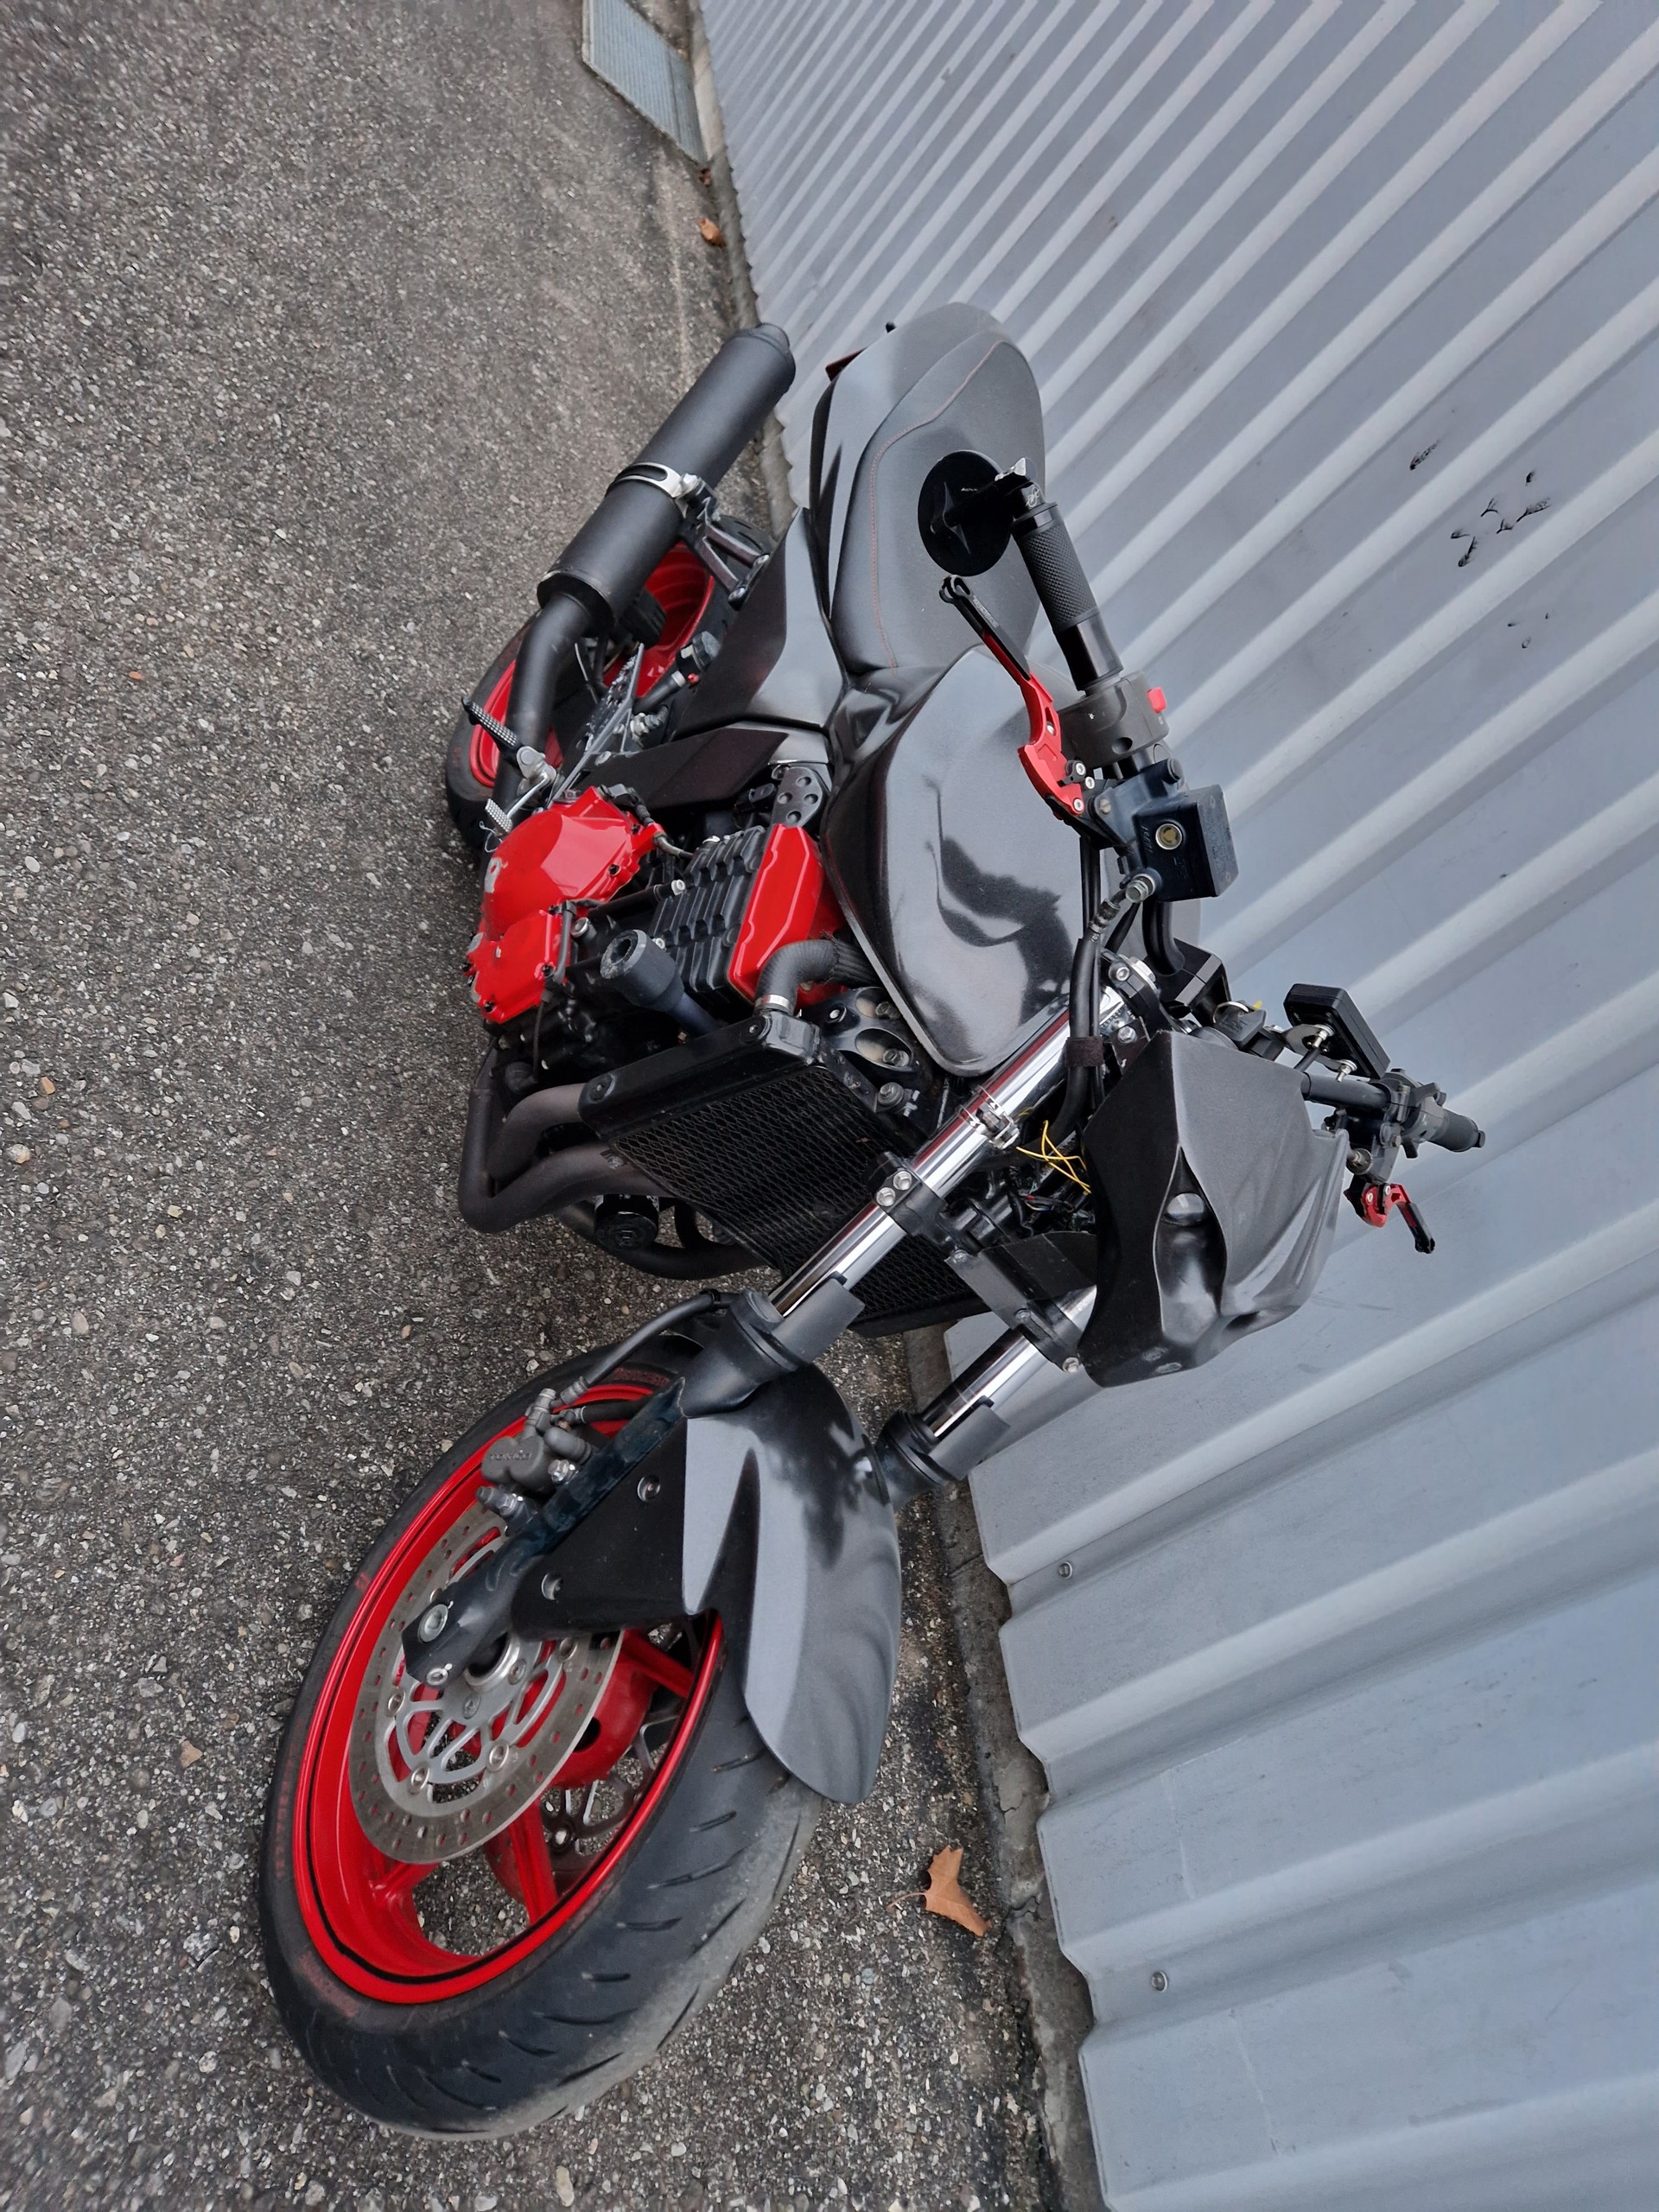 Kawasaki Z750 - Occasion-Motorräder - Moto Center Solothurn